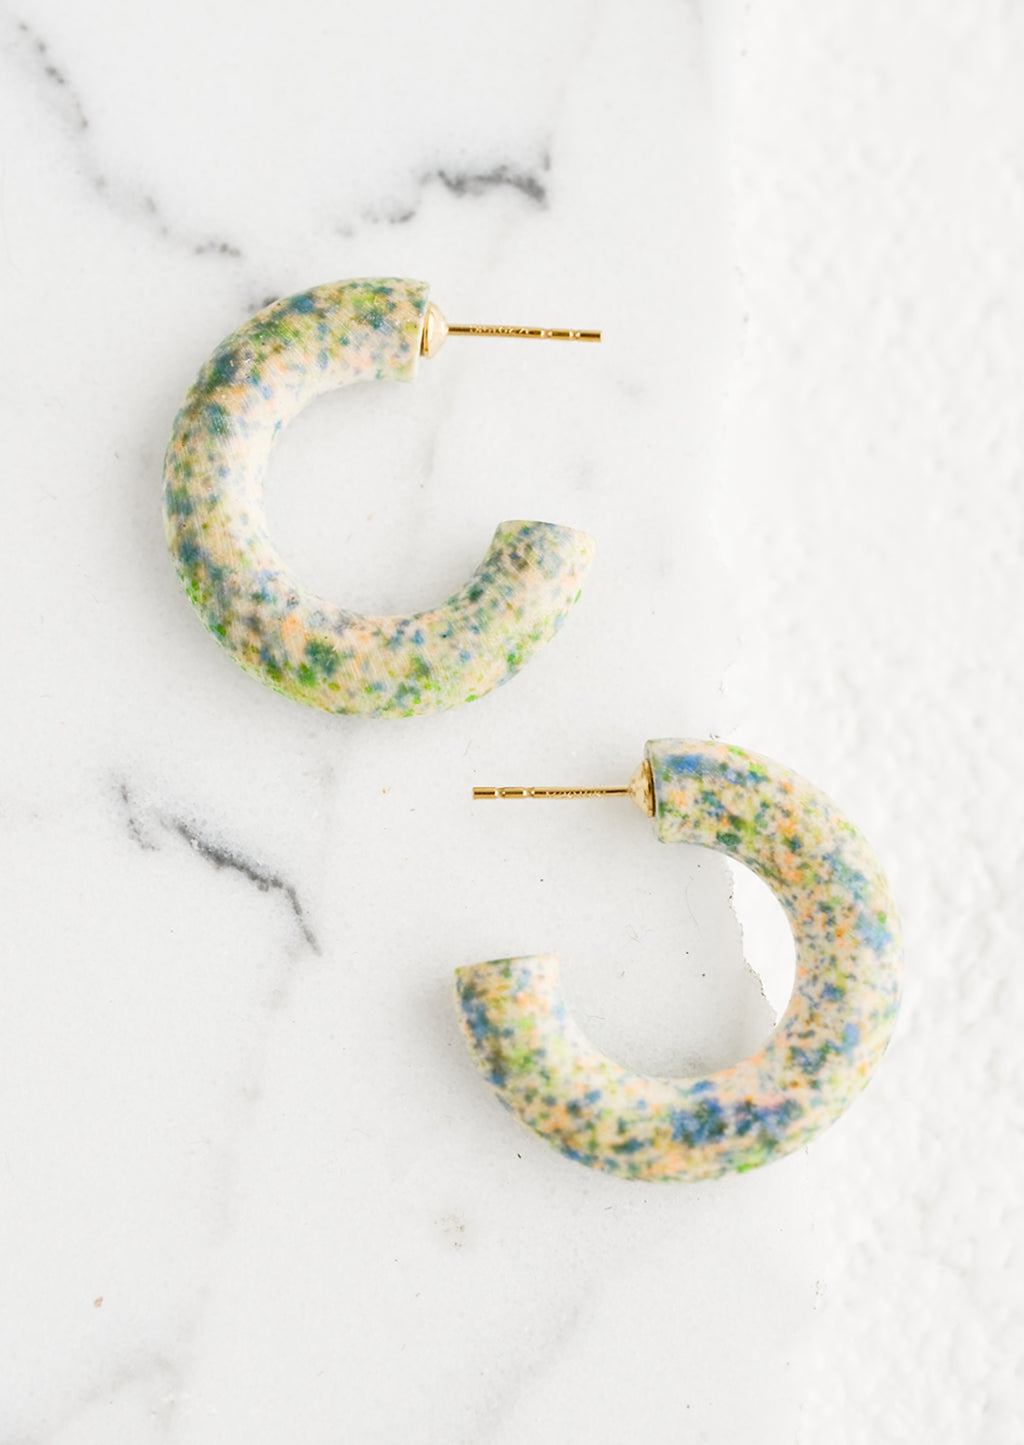 Valley Tie Dye: A pair of painted wood hoop earrings in speckled pattern.